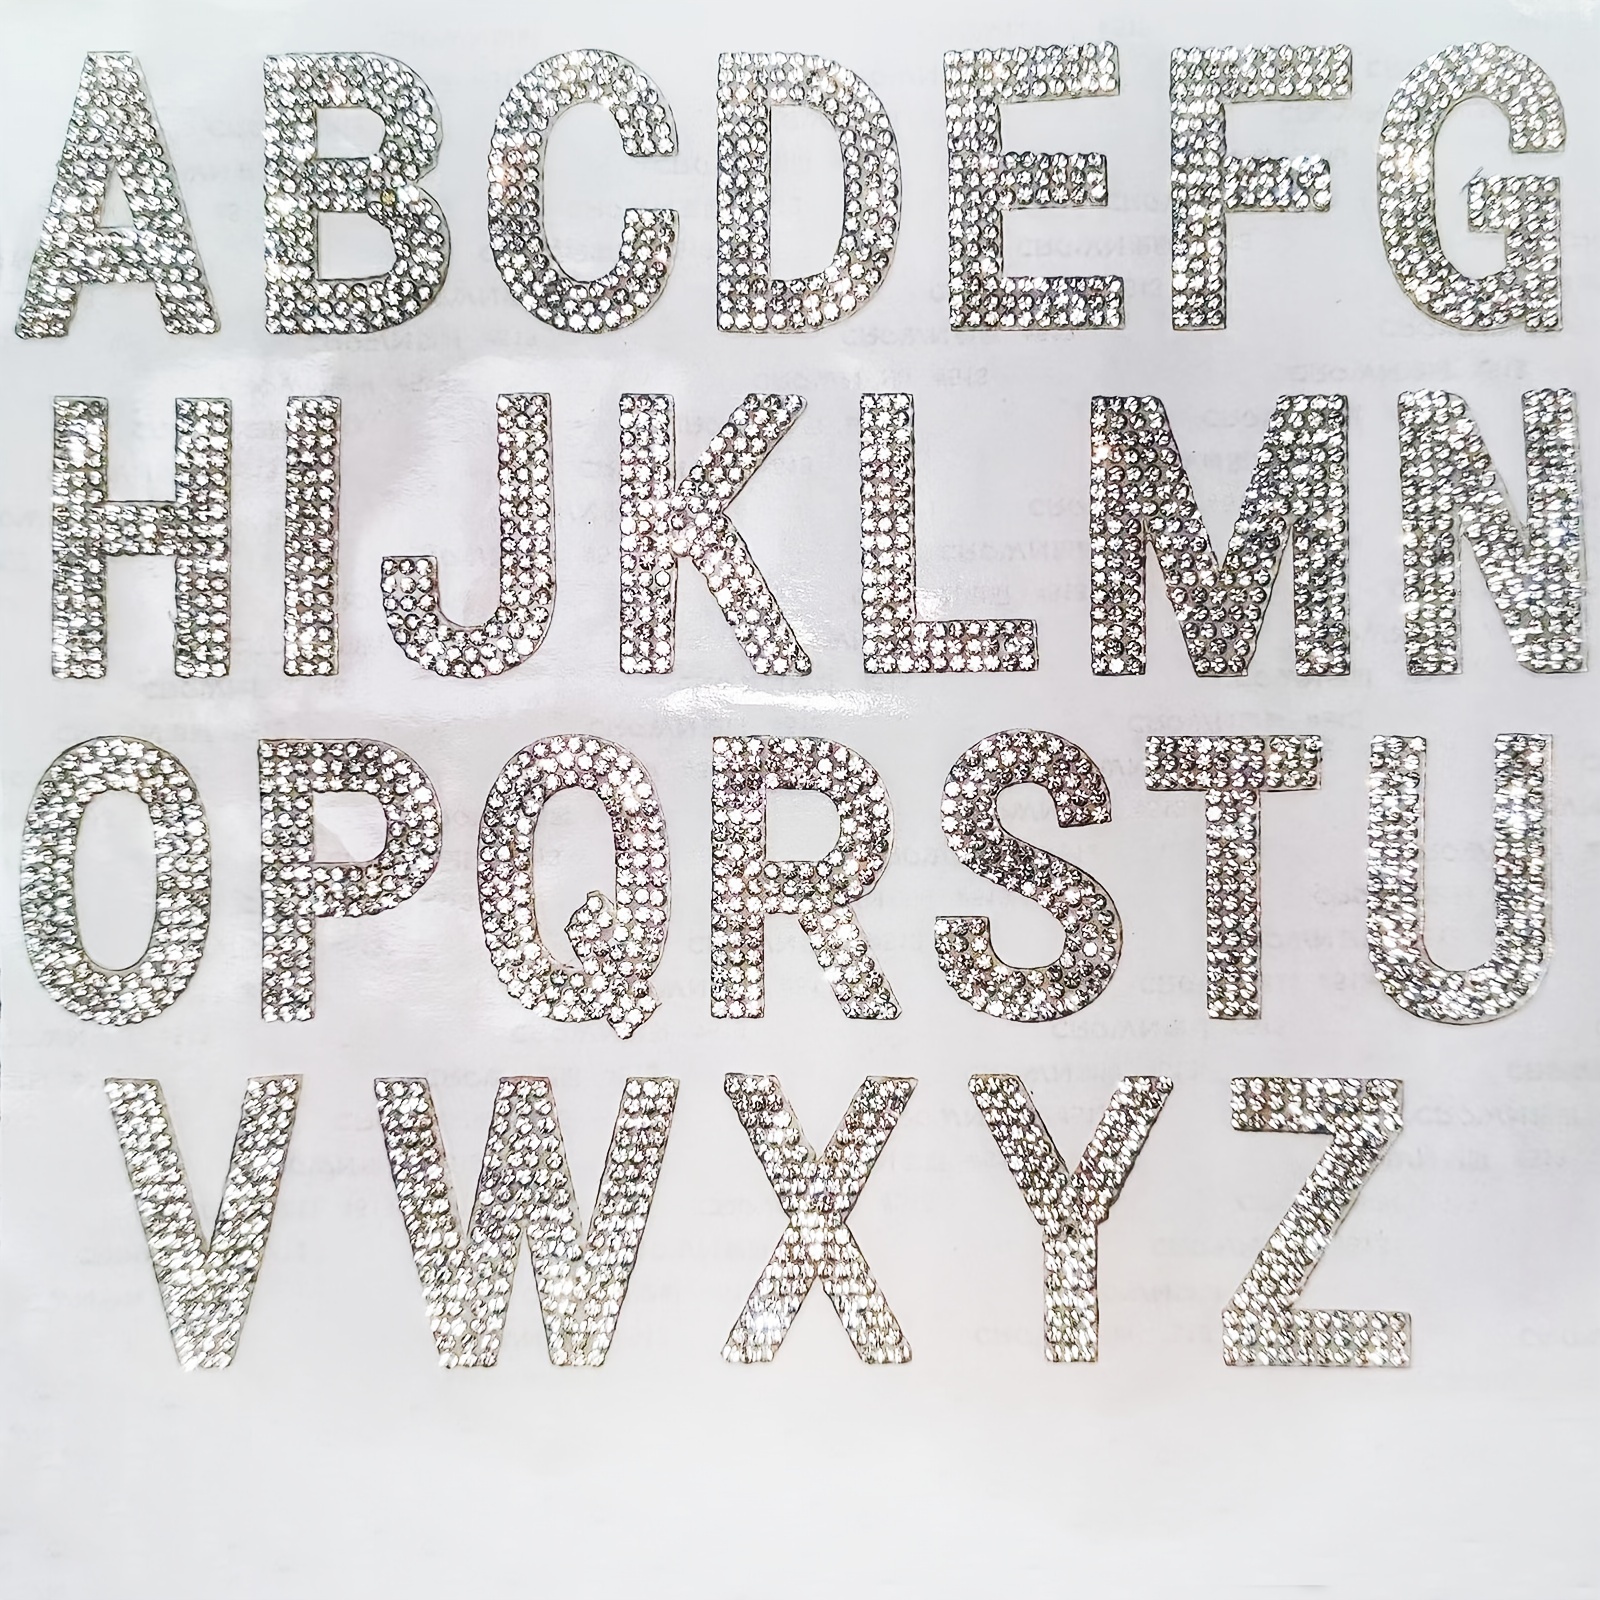 10 hojas de 520 piezas de letras autoadhesivas con brillantina para pegar  en letras mayúsculas, letras adhesivas del alfabeto para decoración de